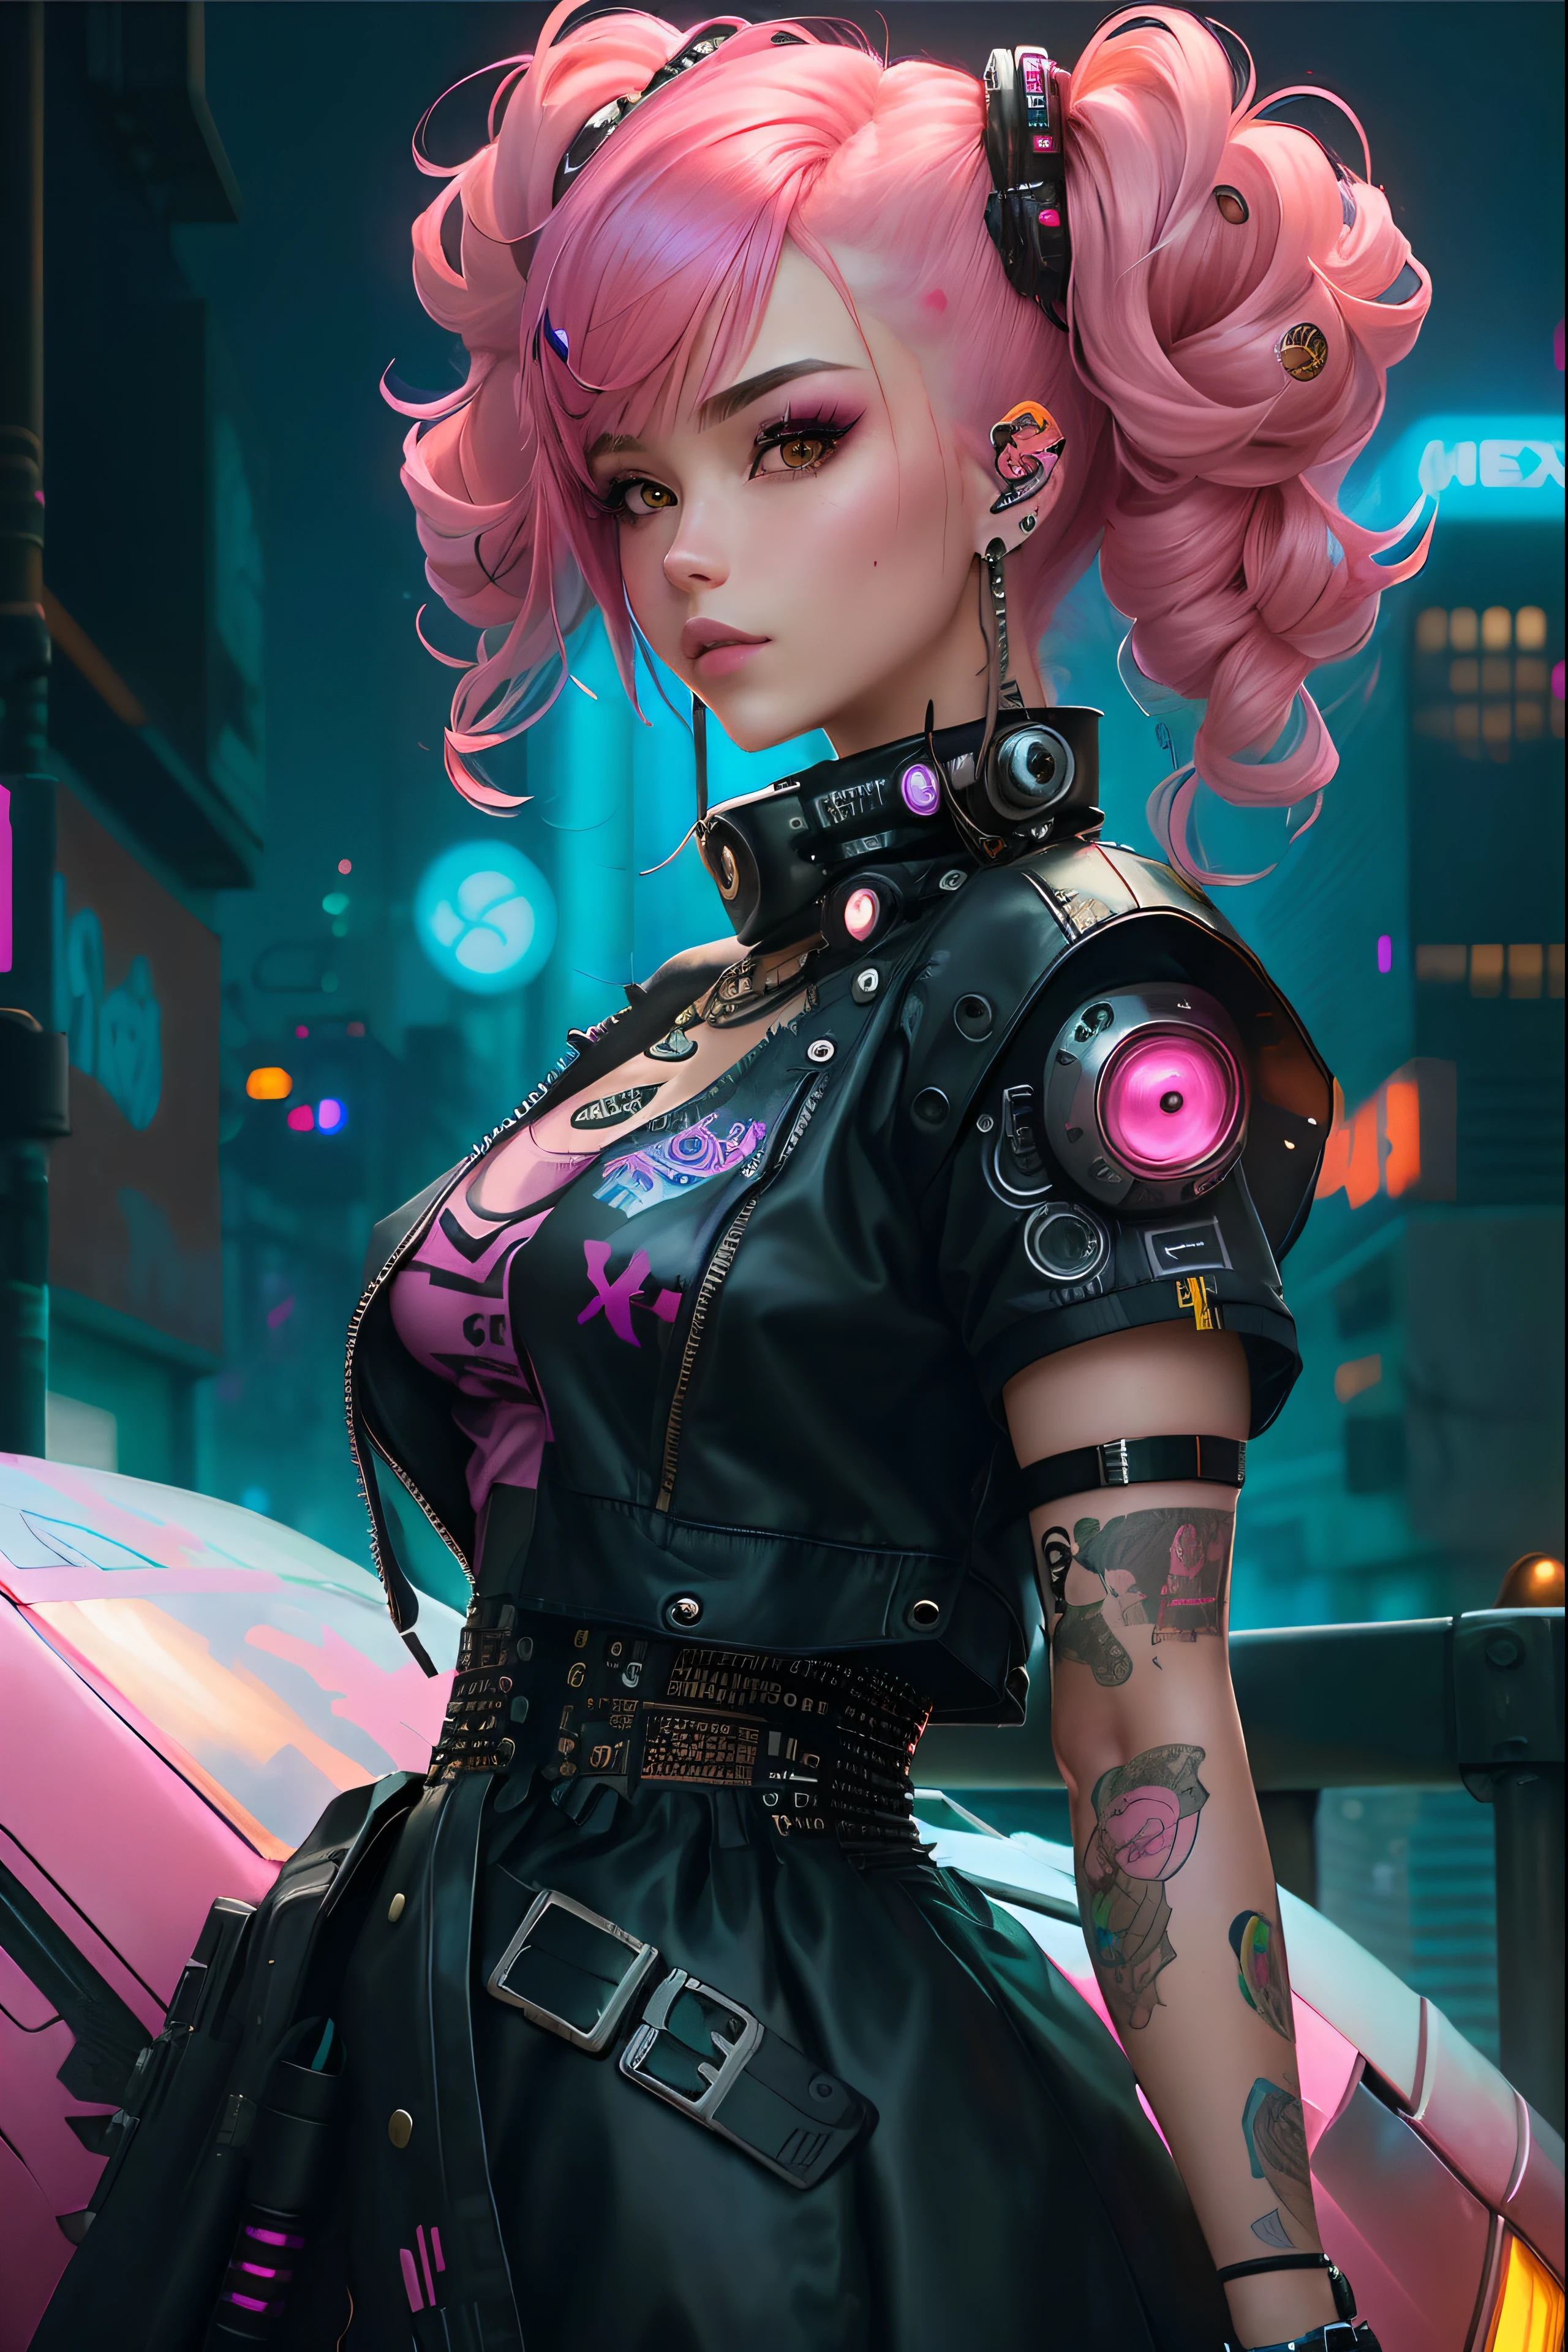 Eine Nahaufnahme einer Frau mit rosa Haaren und einer rosa Perücke, Kunstwerk im Guweiz-Stil, dreamy cyberpunk girl, Estilo de arte cyberpunk, Chica de anime cyberpunk, Anime Arte cyberpunk, alice in wonderland cyberpunk, Hyperrealistischer Cyberpunk-Stil, Digital Cyberpunk - Arte Anime, Estilo de cyberpunk, Süßes Mädchen mit kurzen rosa Haaren, Cyberpunk-Anime-Mädchen